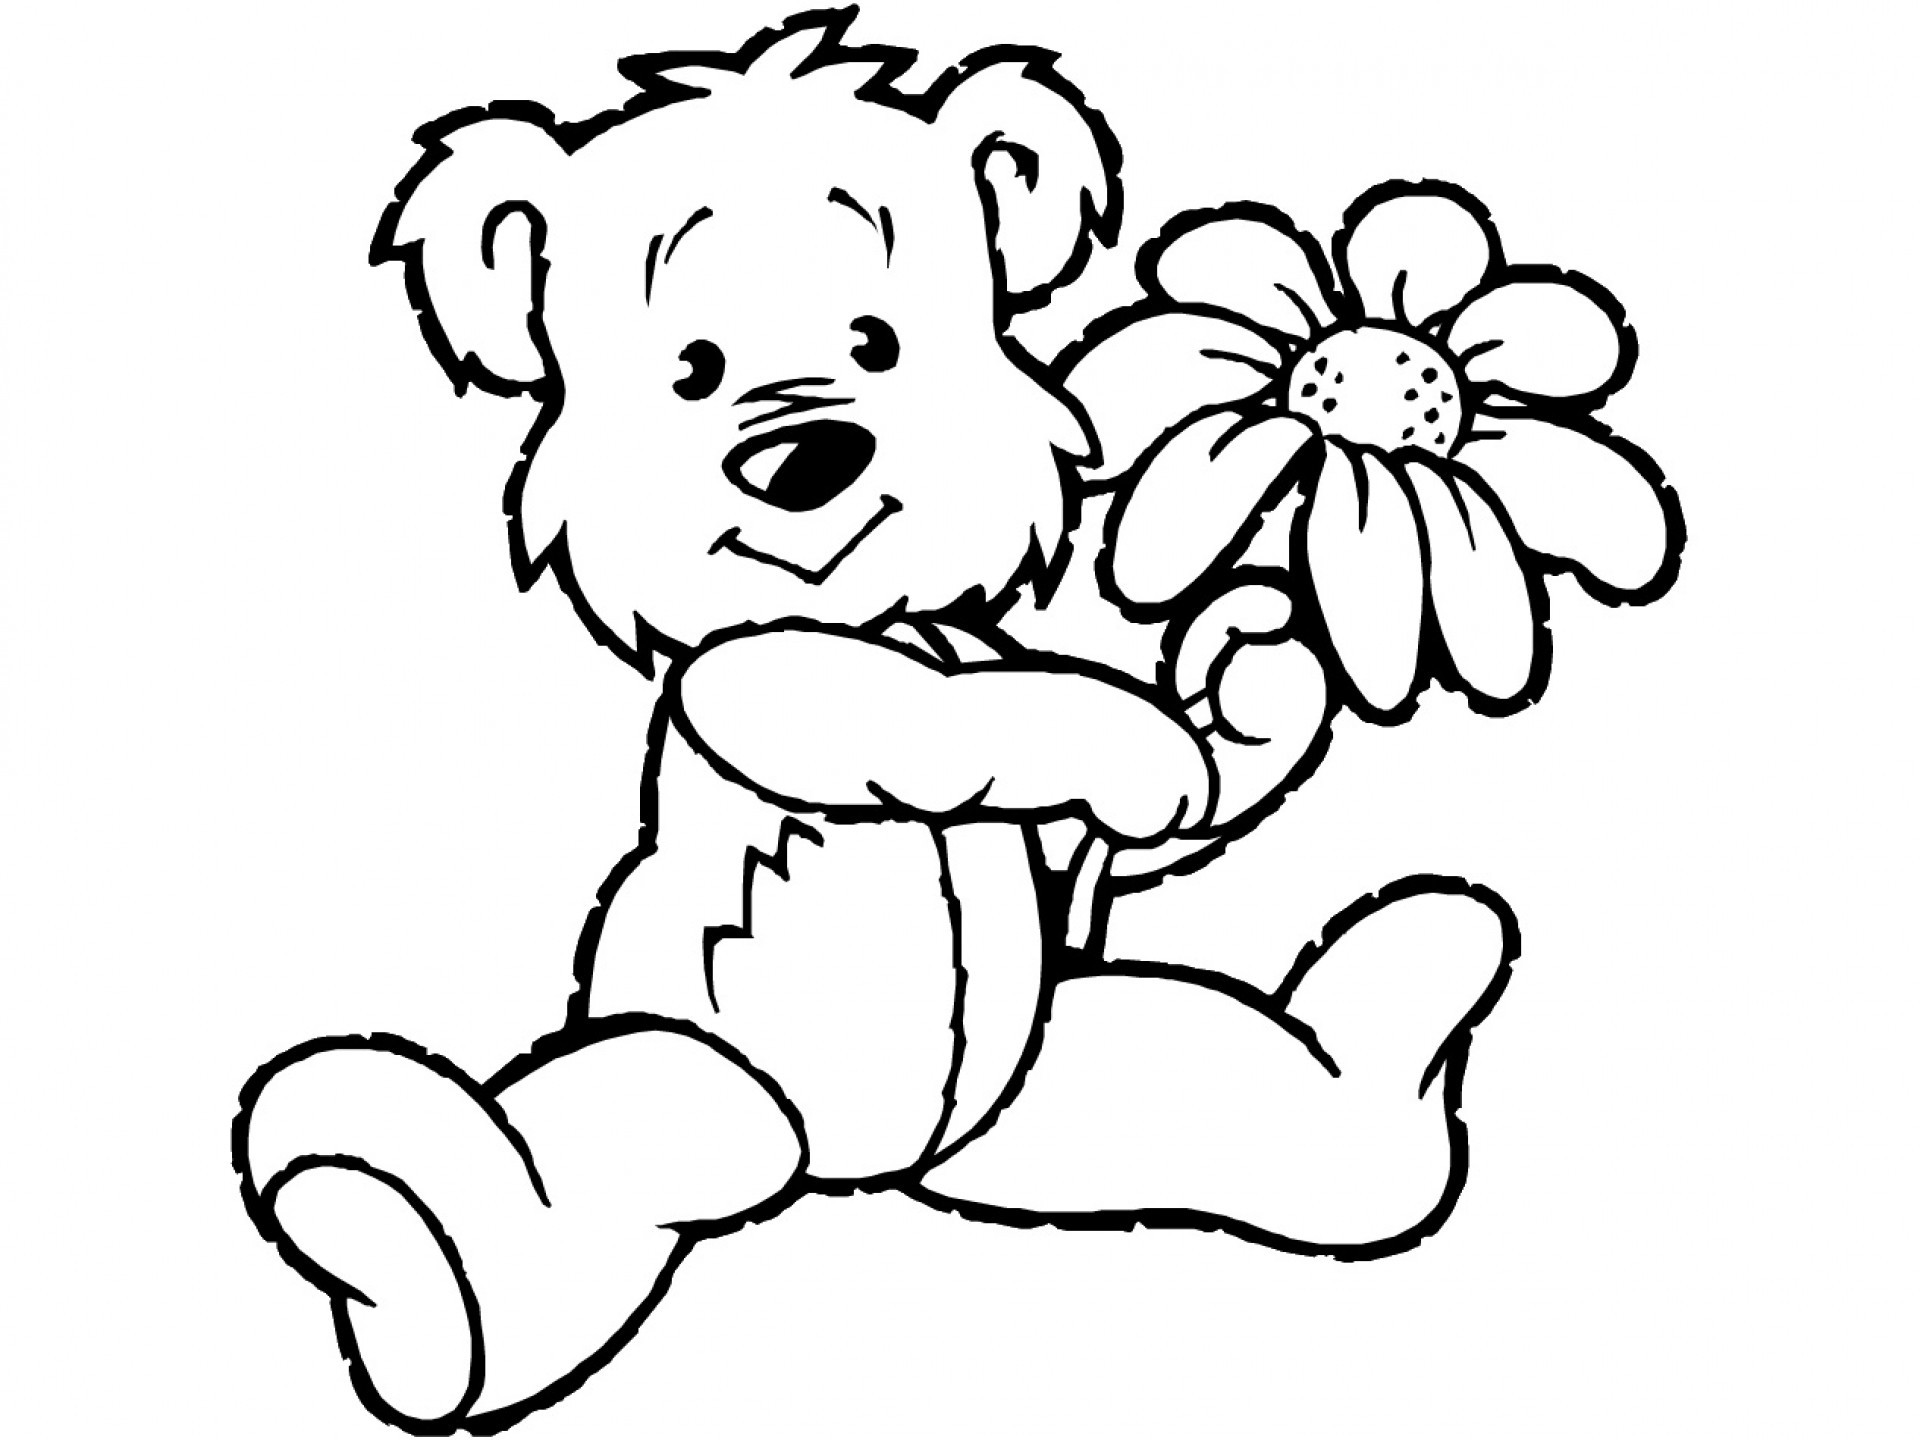 Este pequeno urso oferece-lhe uma flor